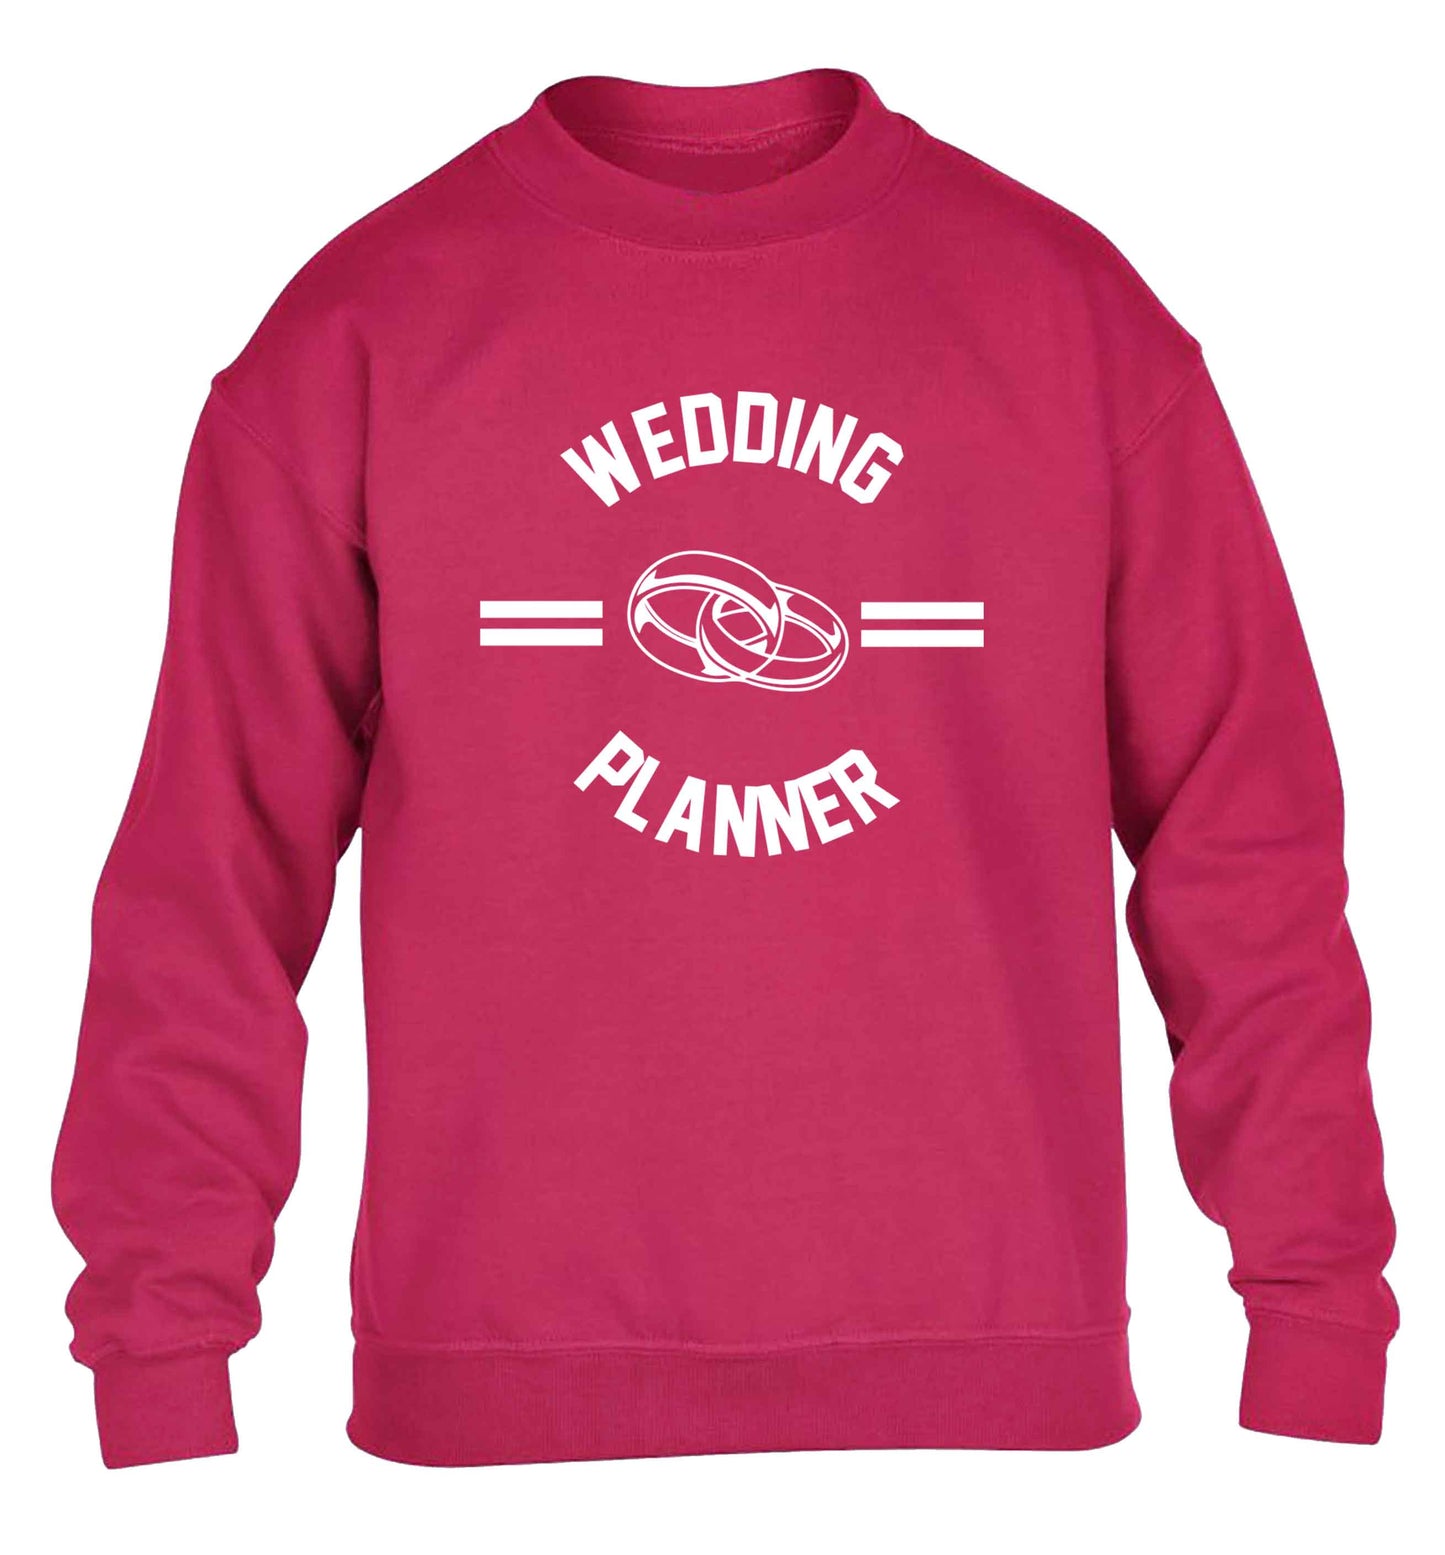 Wedding planner children's pink sweater 12-13 Years